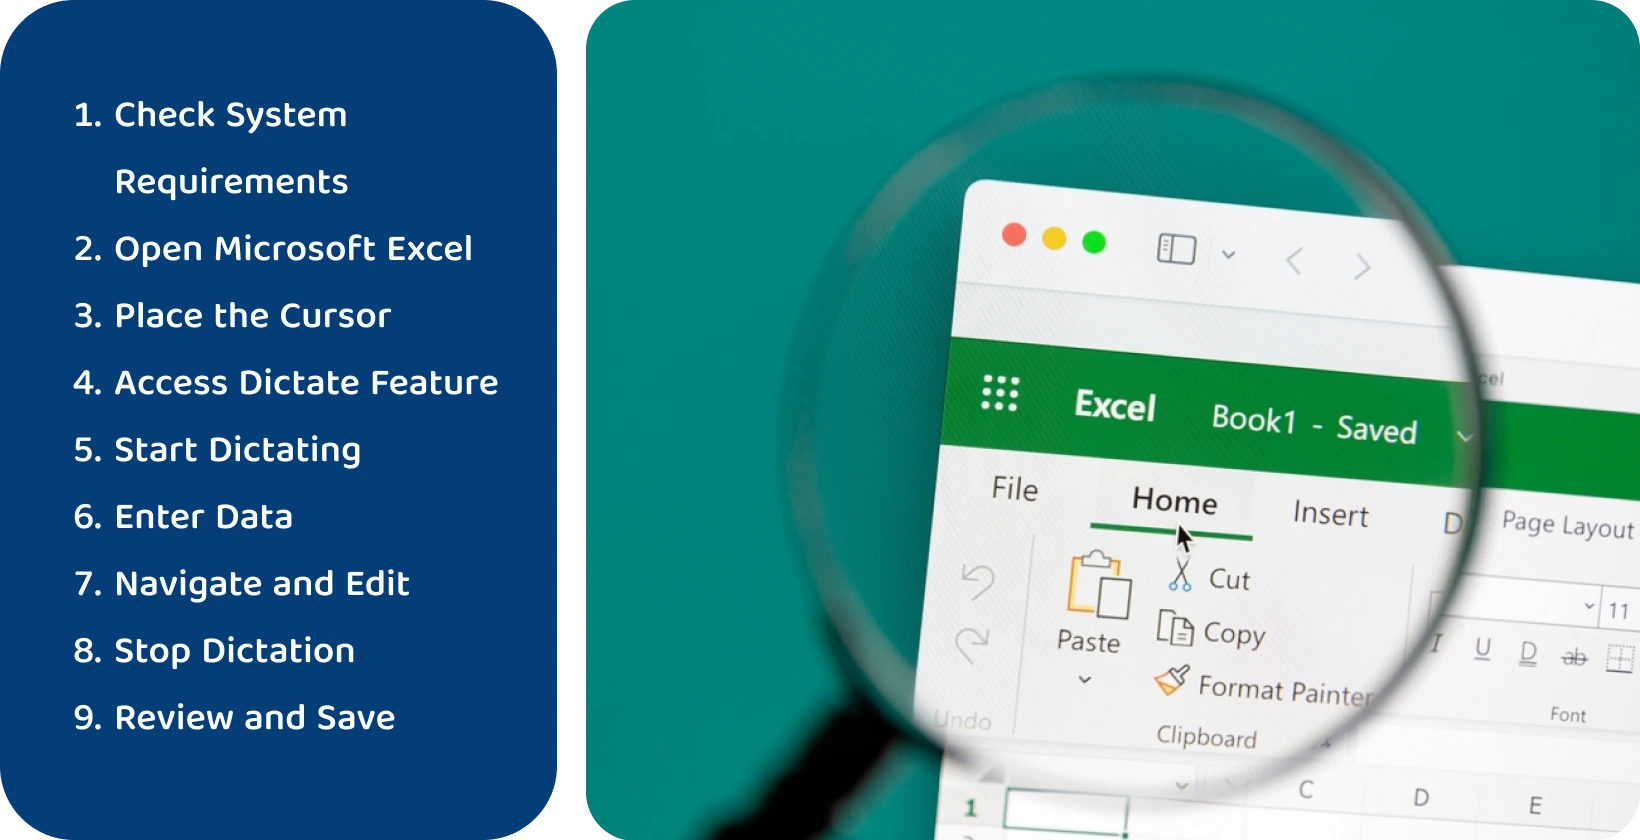 Naudokite diktavimo funkciją Excel efektyviai transkribuoti kalbą į tekstą, kaip parodyta per padidintą sąsają.